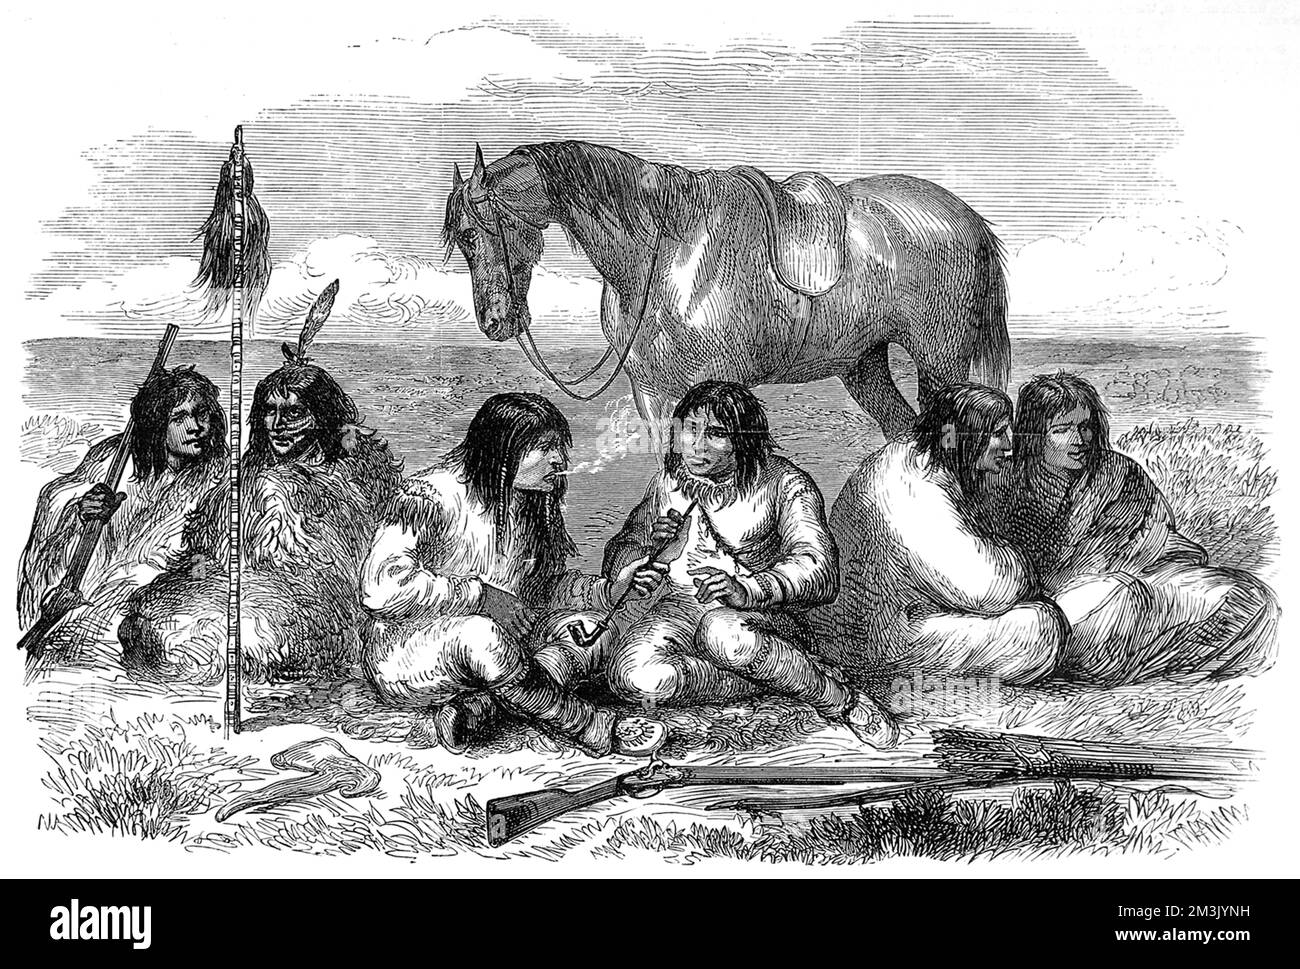 Eine Gruppe männlicher Prärie-Cree-Indianer, die lange Pfeifen rauchen und miteinander reden. Die Cree tragen gezackte Schnürsenkel und Federn im Haar, mit Gewehren und einem Beil im Vordergrund und einem Pferd im Hintergrund. Stockfoto